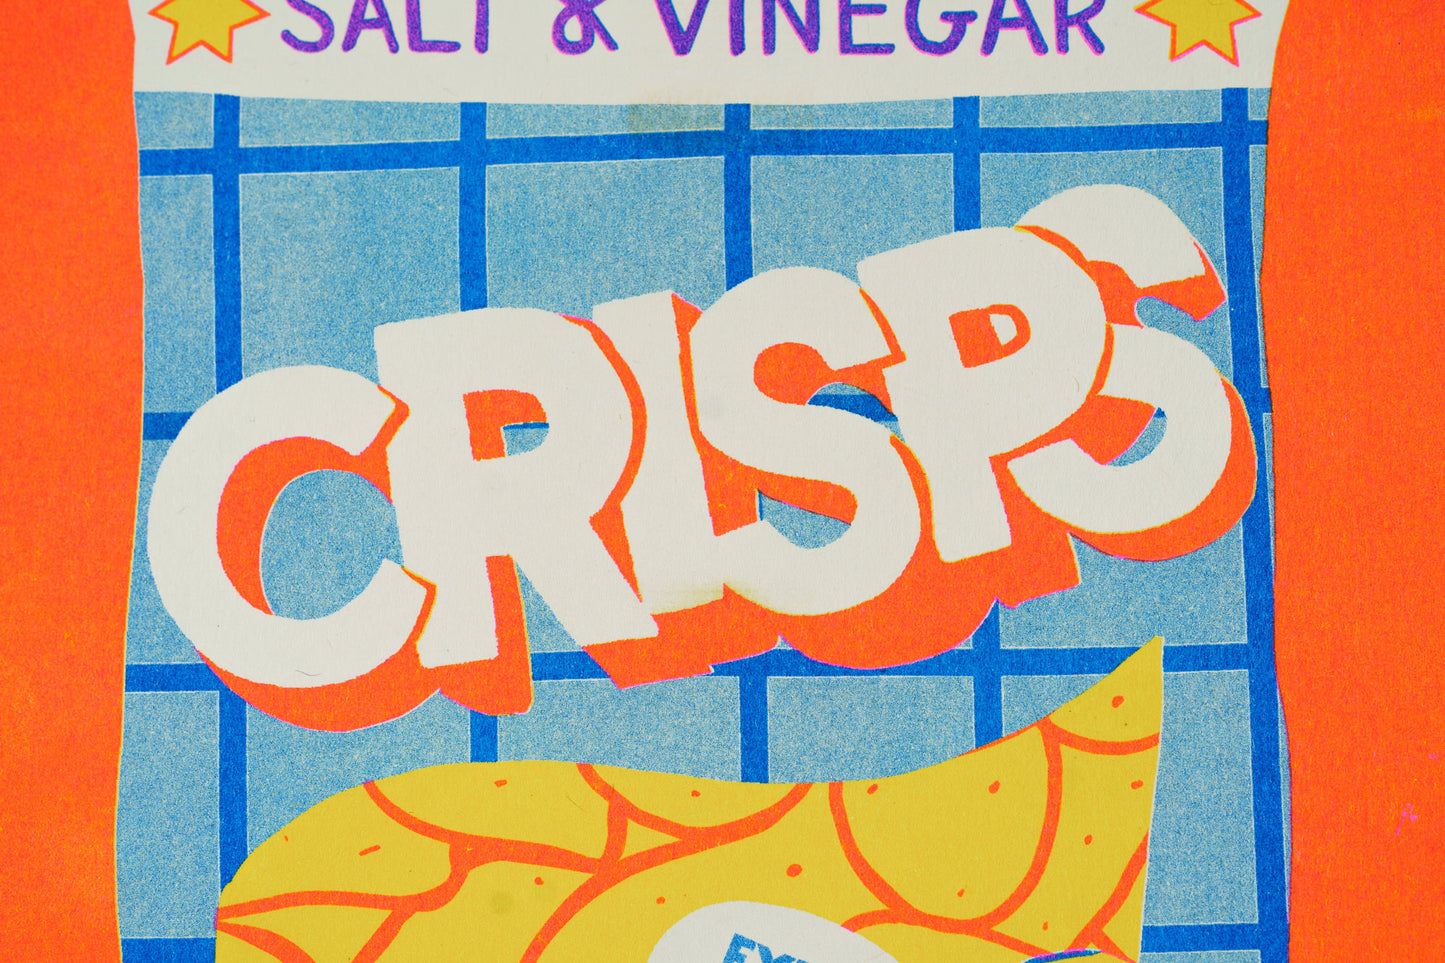 Crisps print